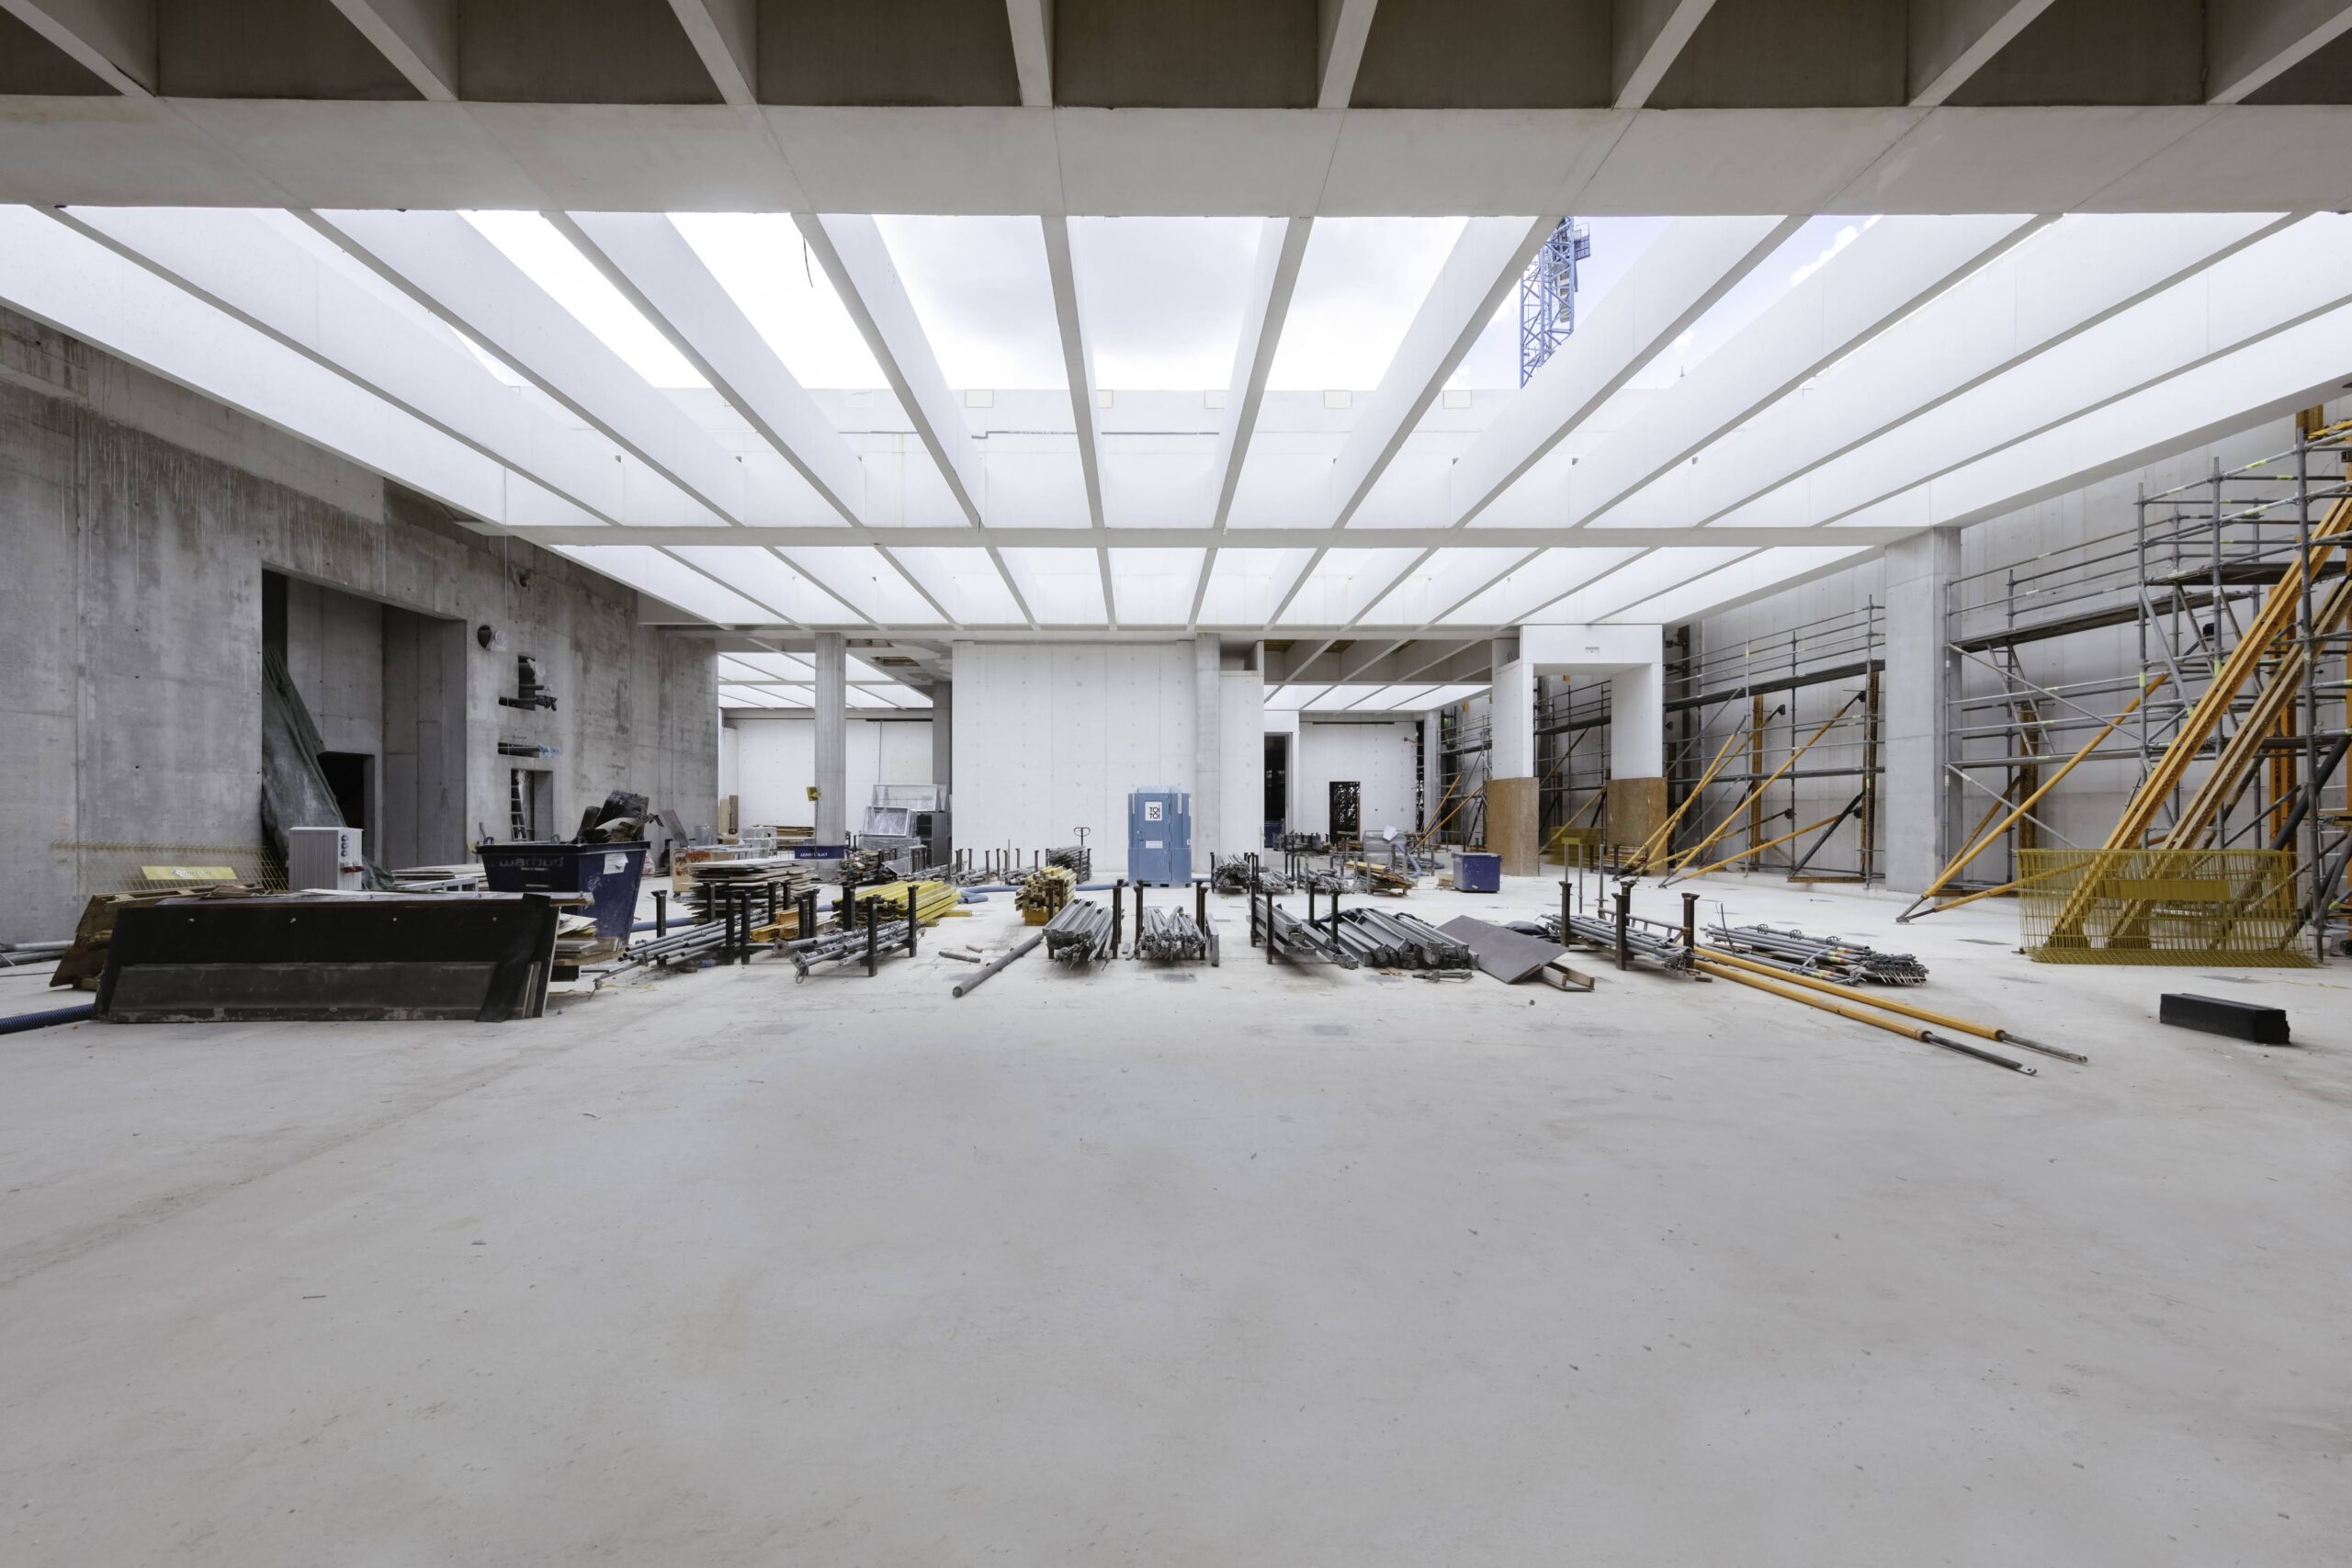 Muzeum Sztuki Nowoczesnej w budowie, czyli integracja technologii z architekturą